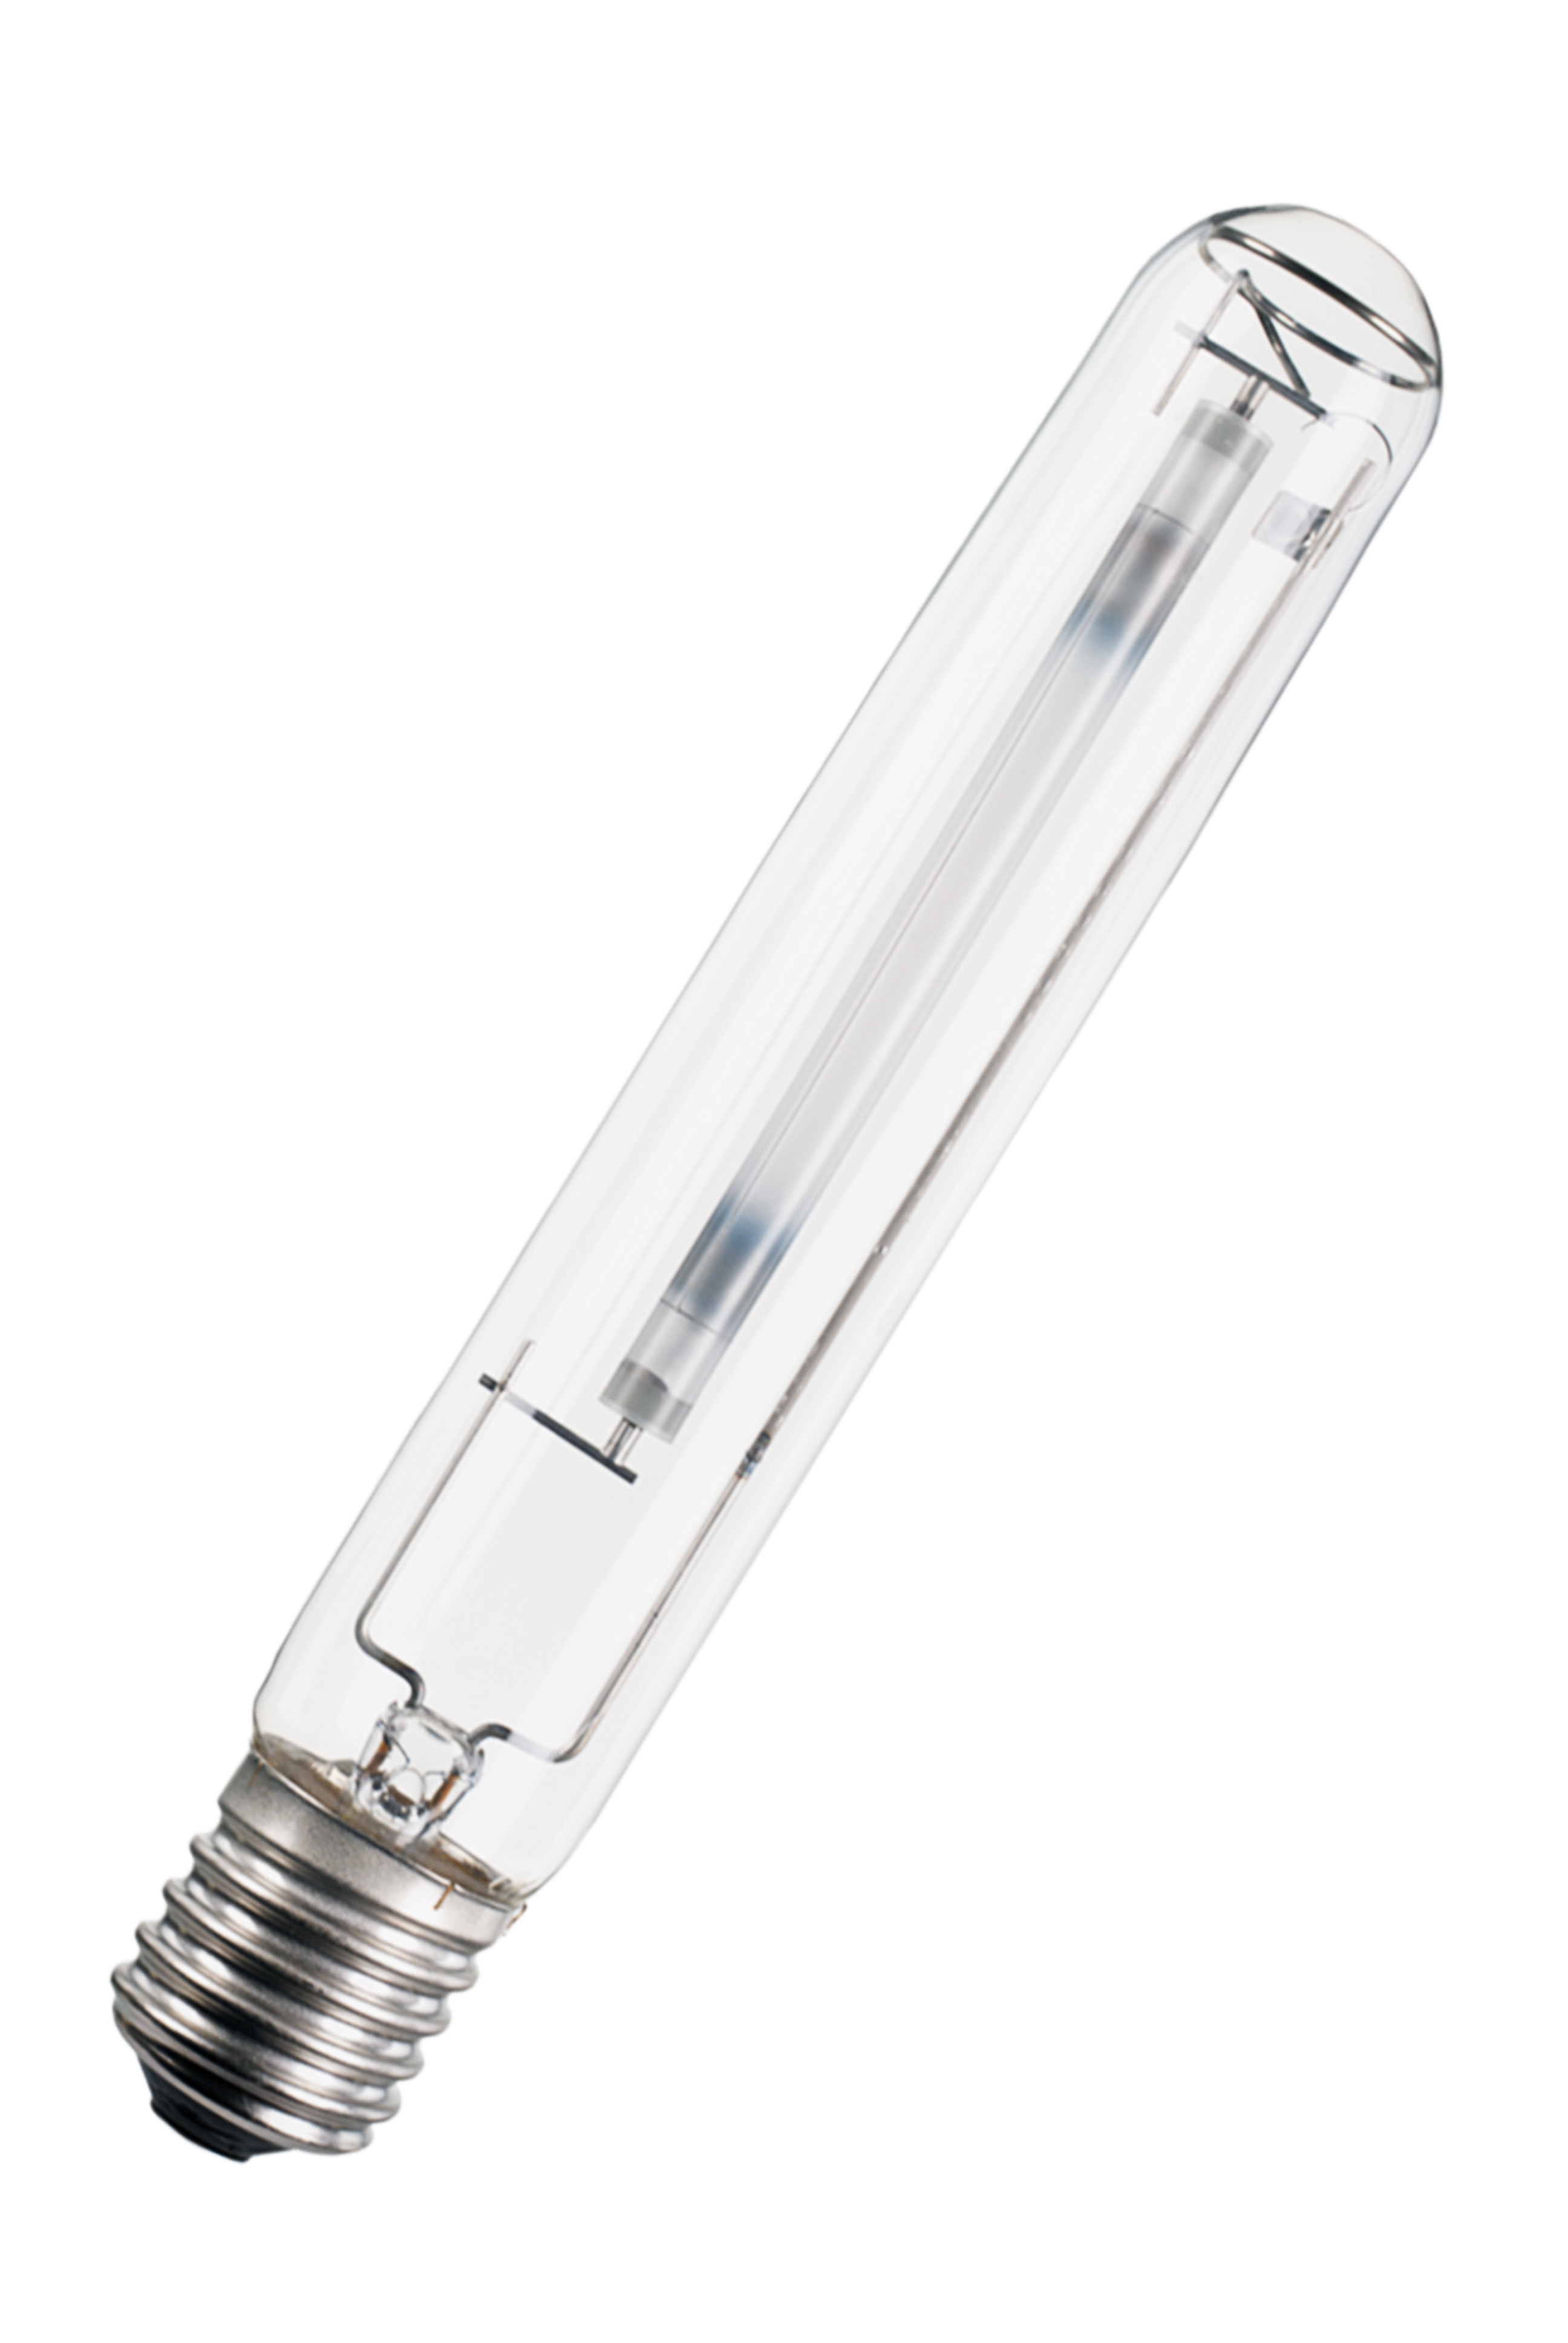 High pressure sodium-vapour lamp